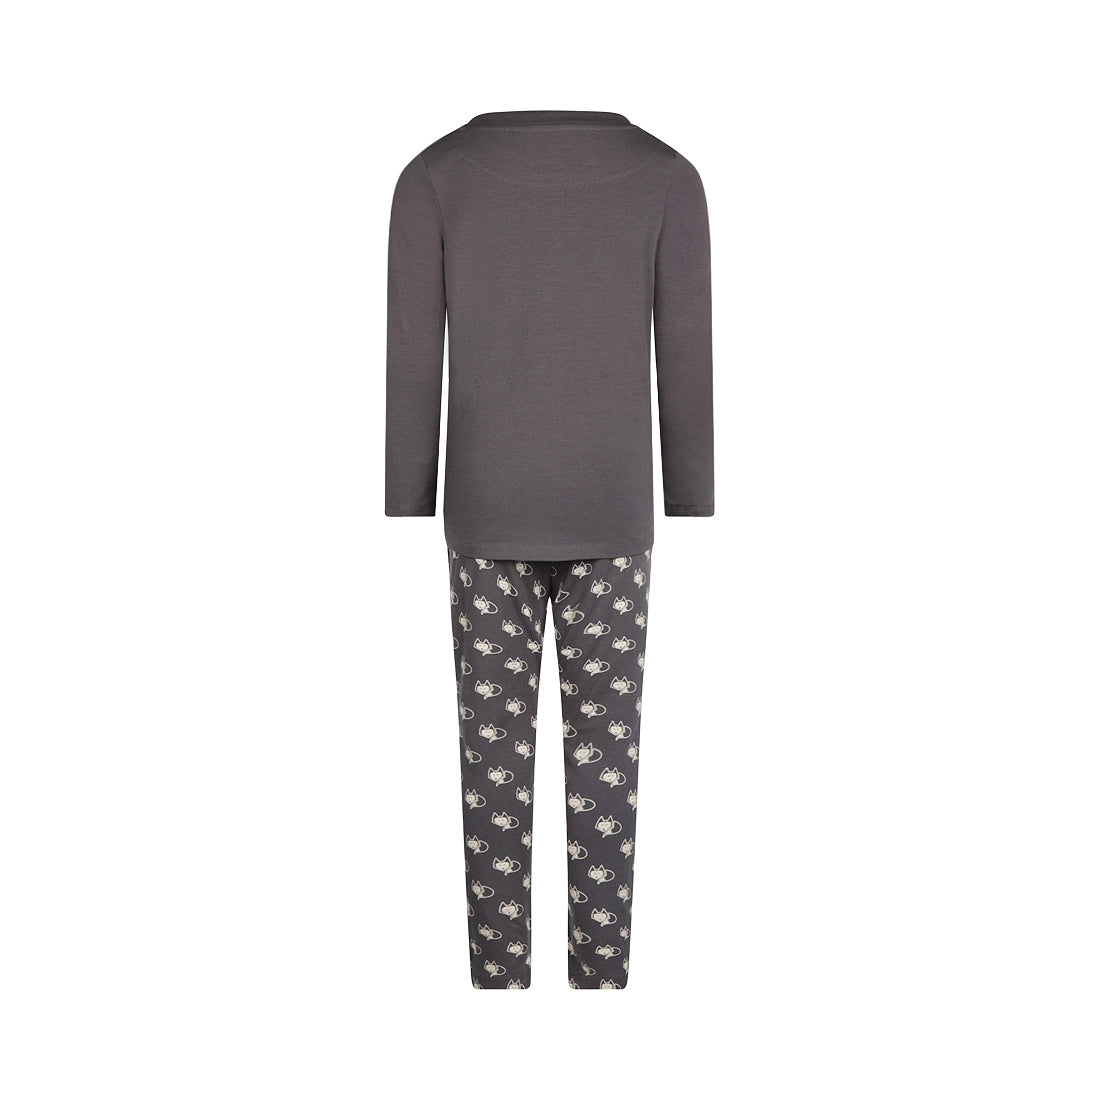 Jongens Boys pyjama set van Charlie Choe in de kleur Dark grey in maat 158-164.